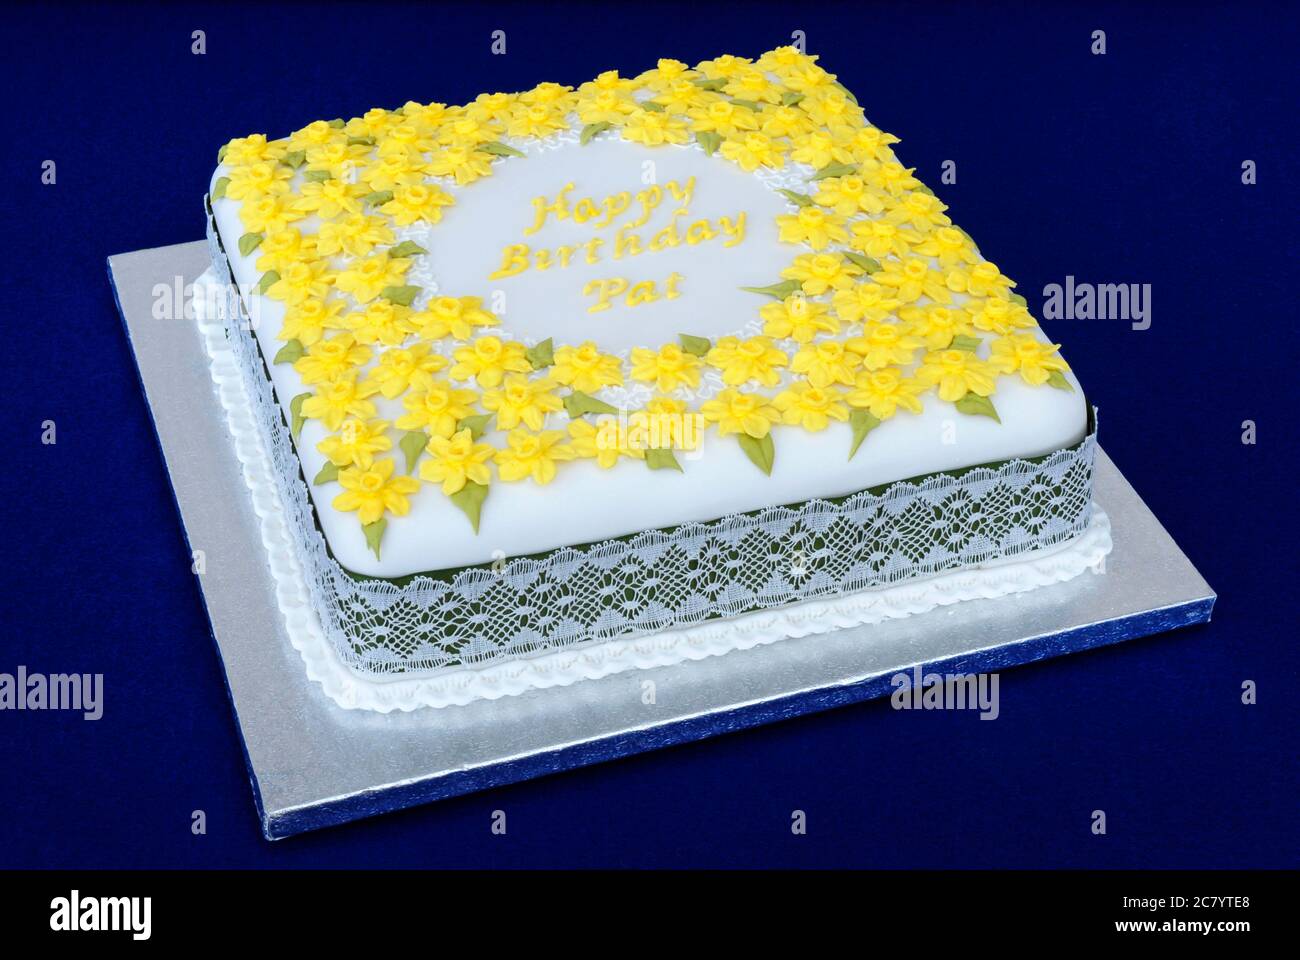 Pastel de cumpleaños cuadrado, con mucho azúcar, decorado con flores  amarillas y el saludo 'Feliz cumpleaños' Fotografía de stock - Alamy